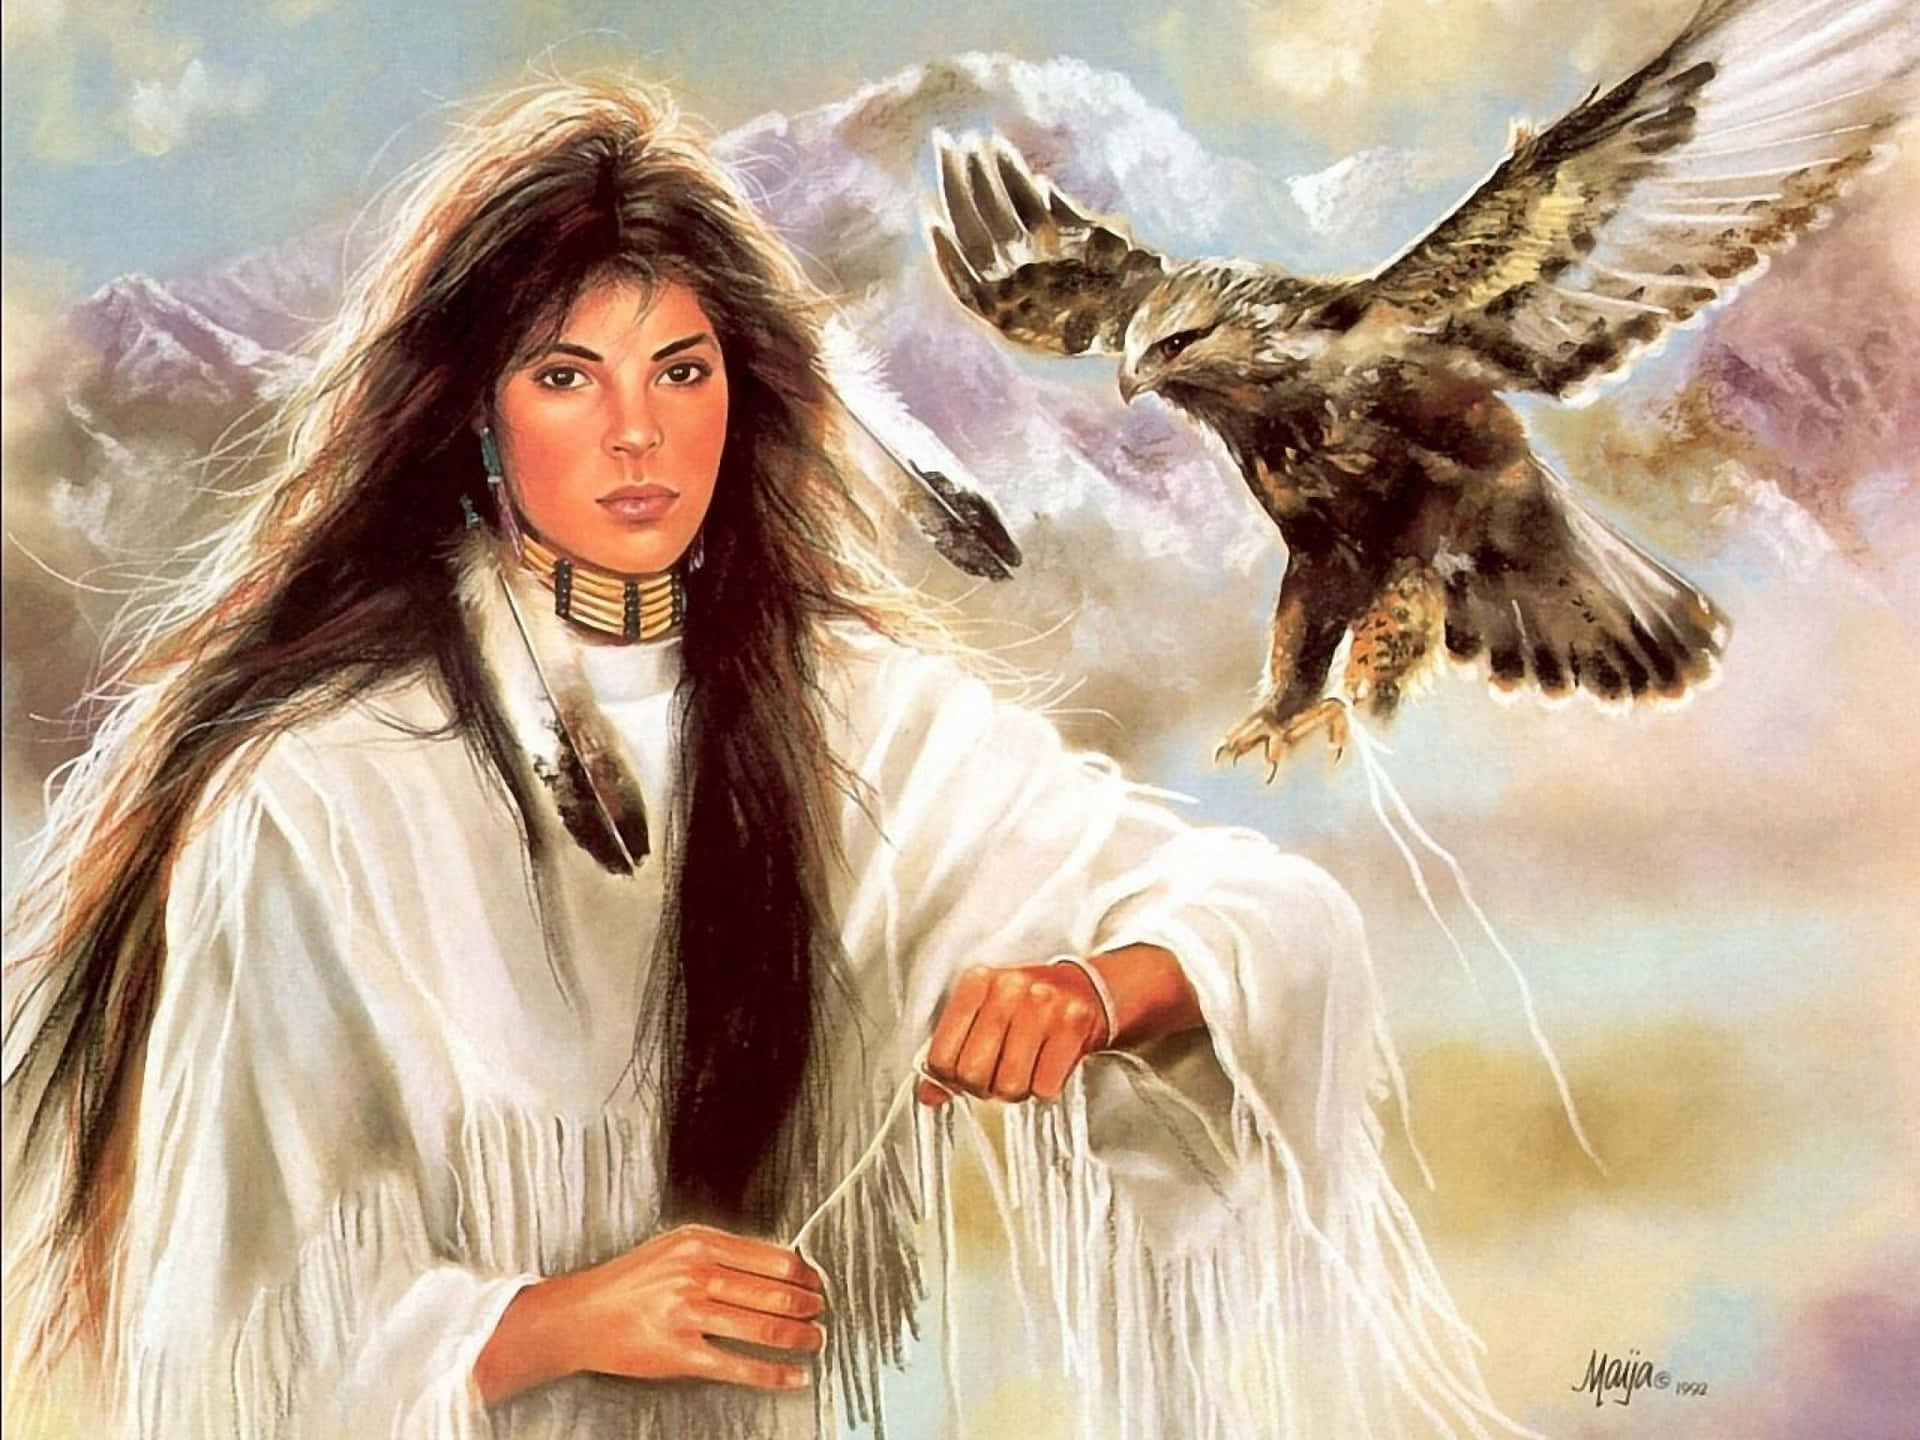 Eingemälde Einer Native American Frau Mit Einem Adler. Wallpaper